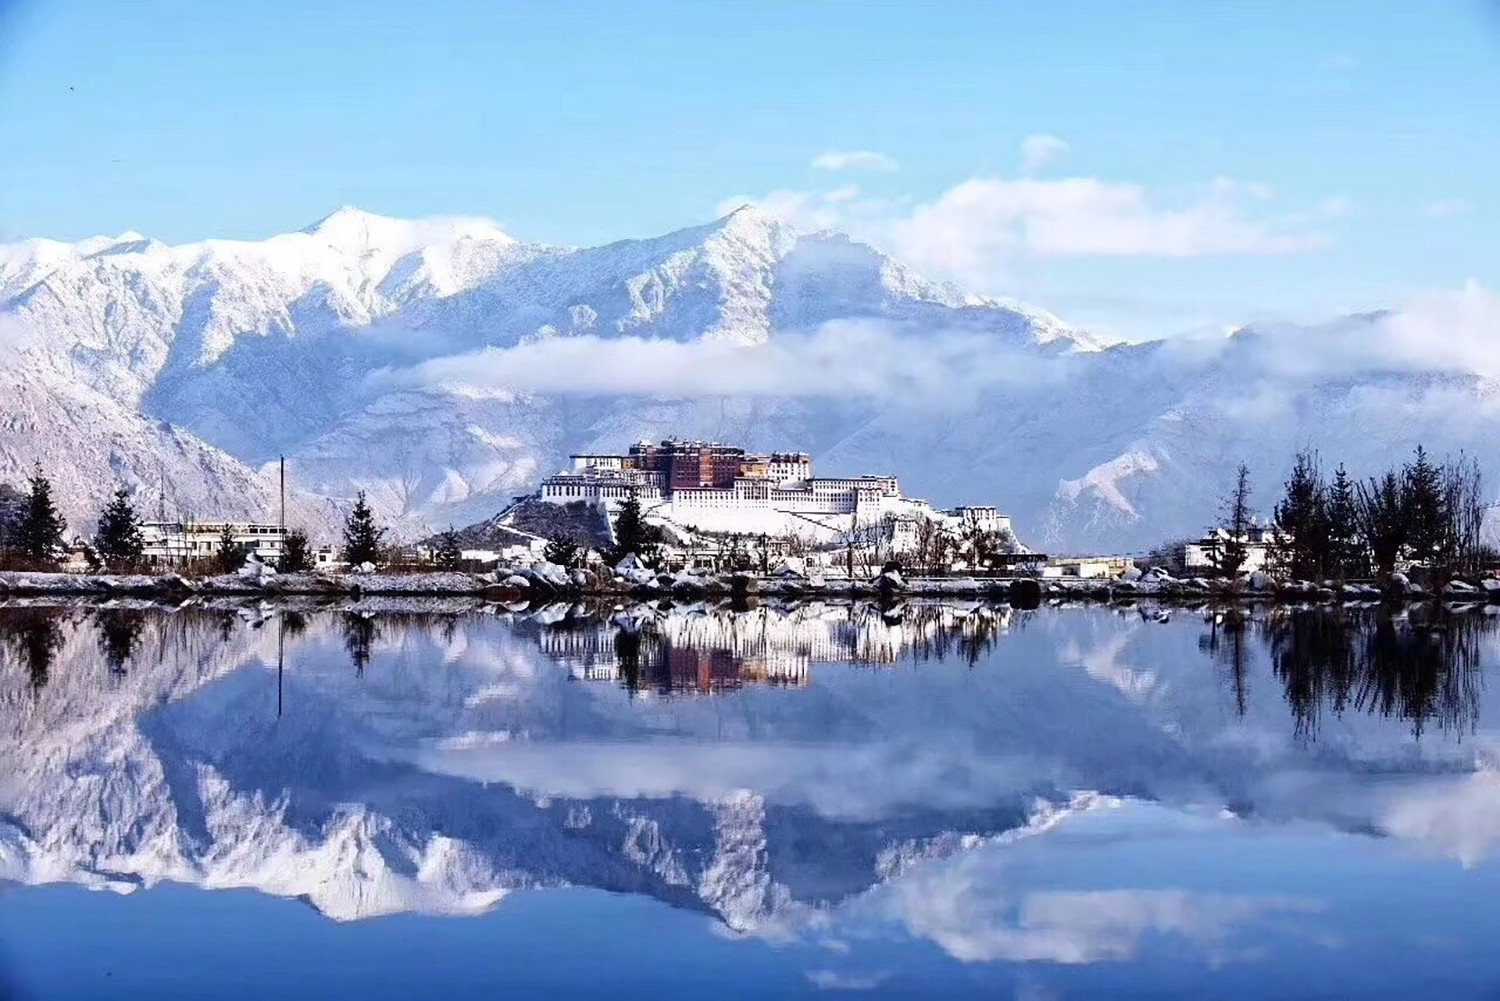 Tây Tạng phủ tuyết trắng trong mùa đông. Ảnh: Tibetan Review.